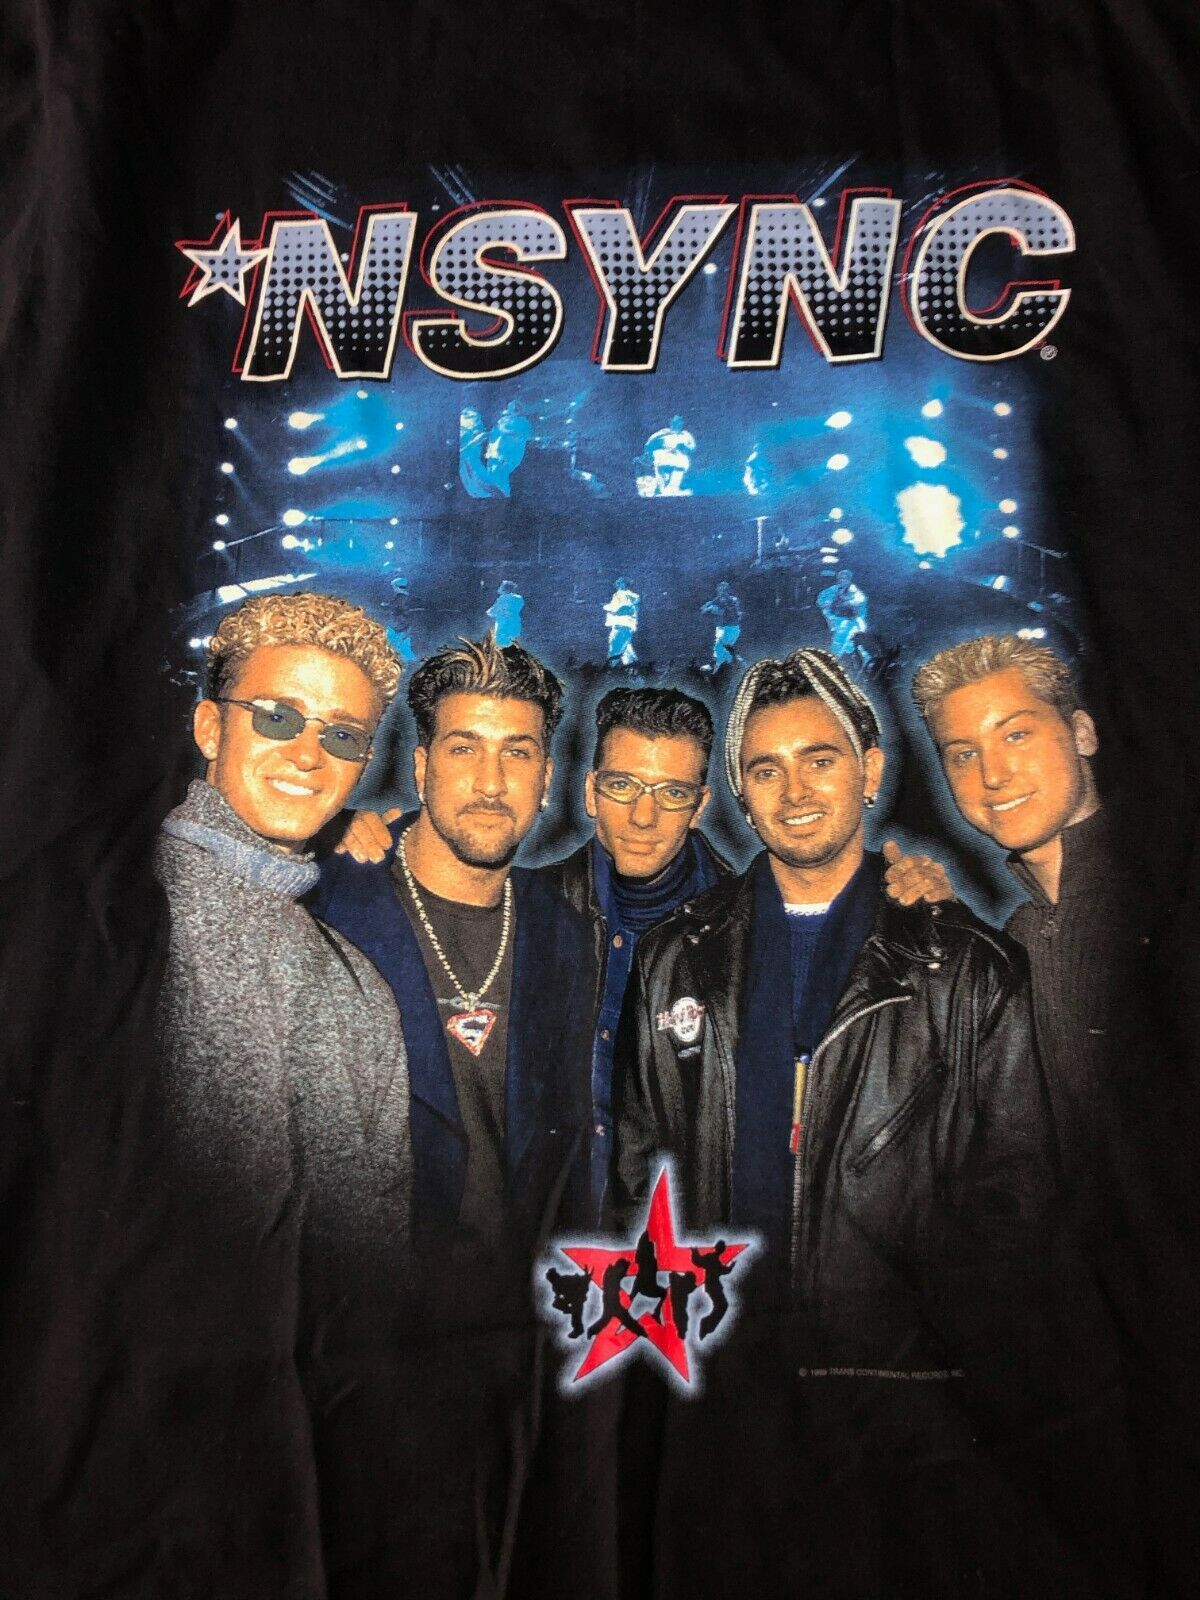 nsync 1999 tour shirt